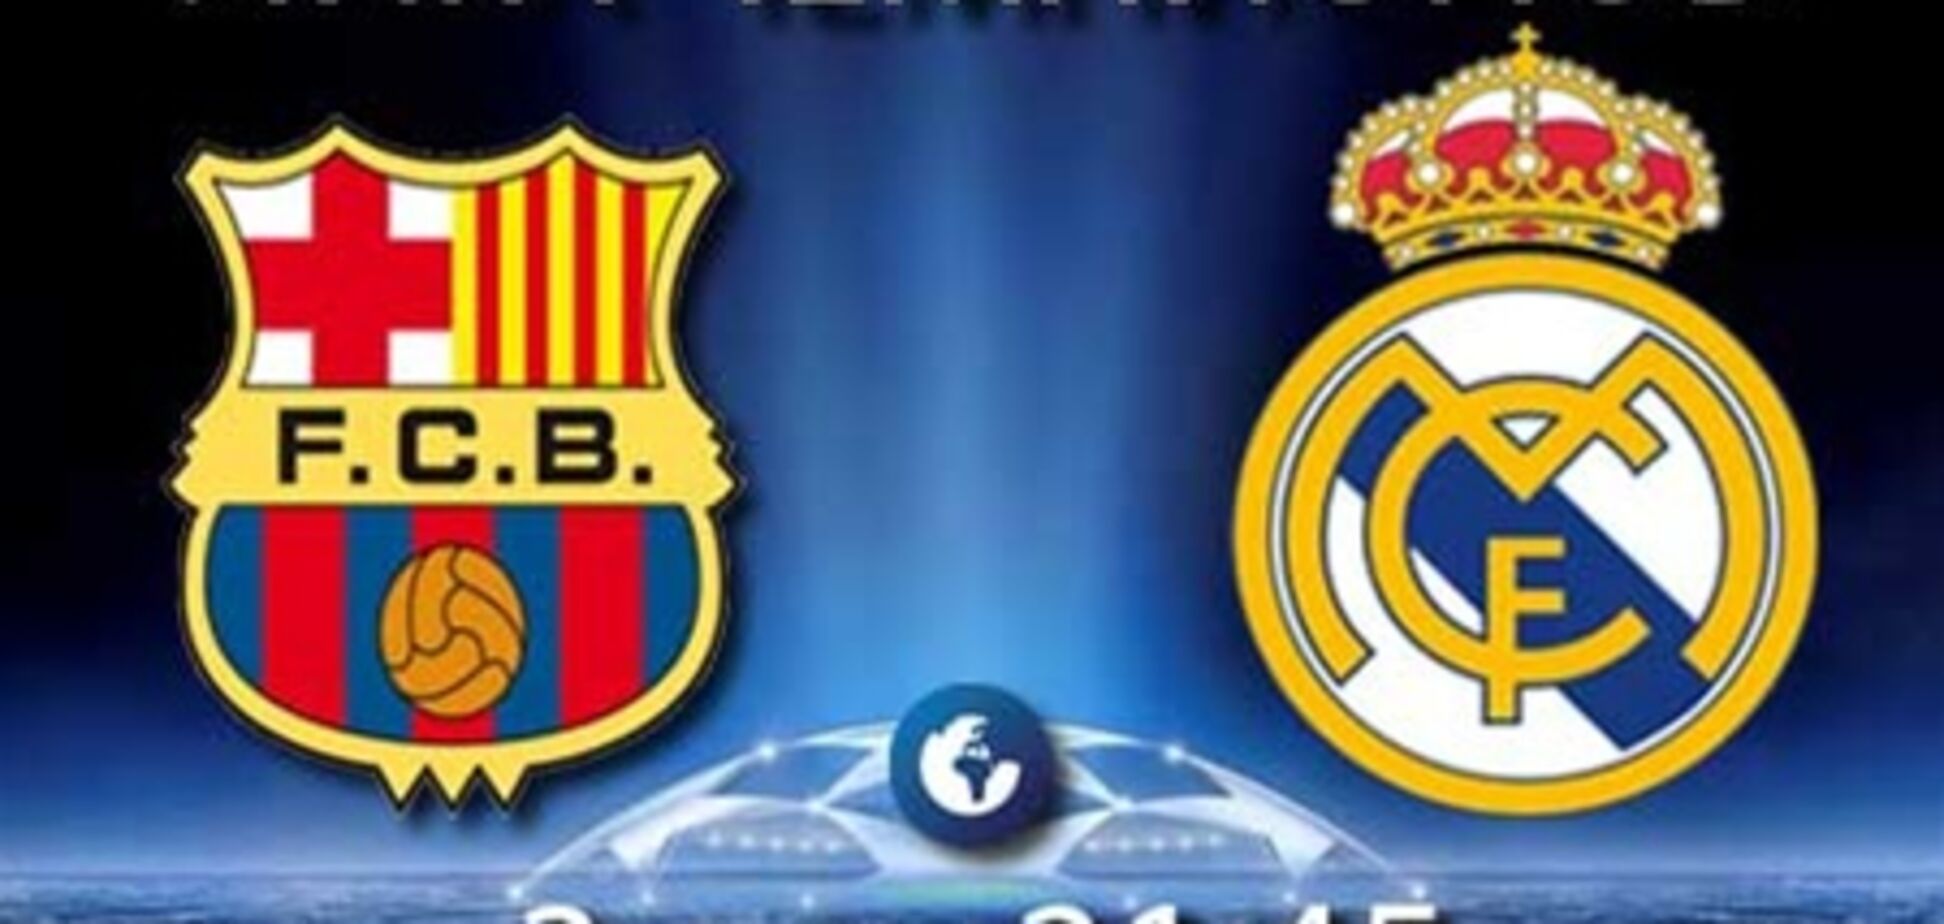 Сегодня матч Лиги чемпионов 'Барселона' - 'Реал'. Превью поединка